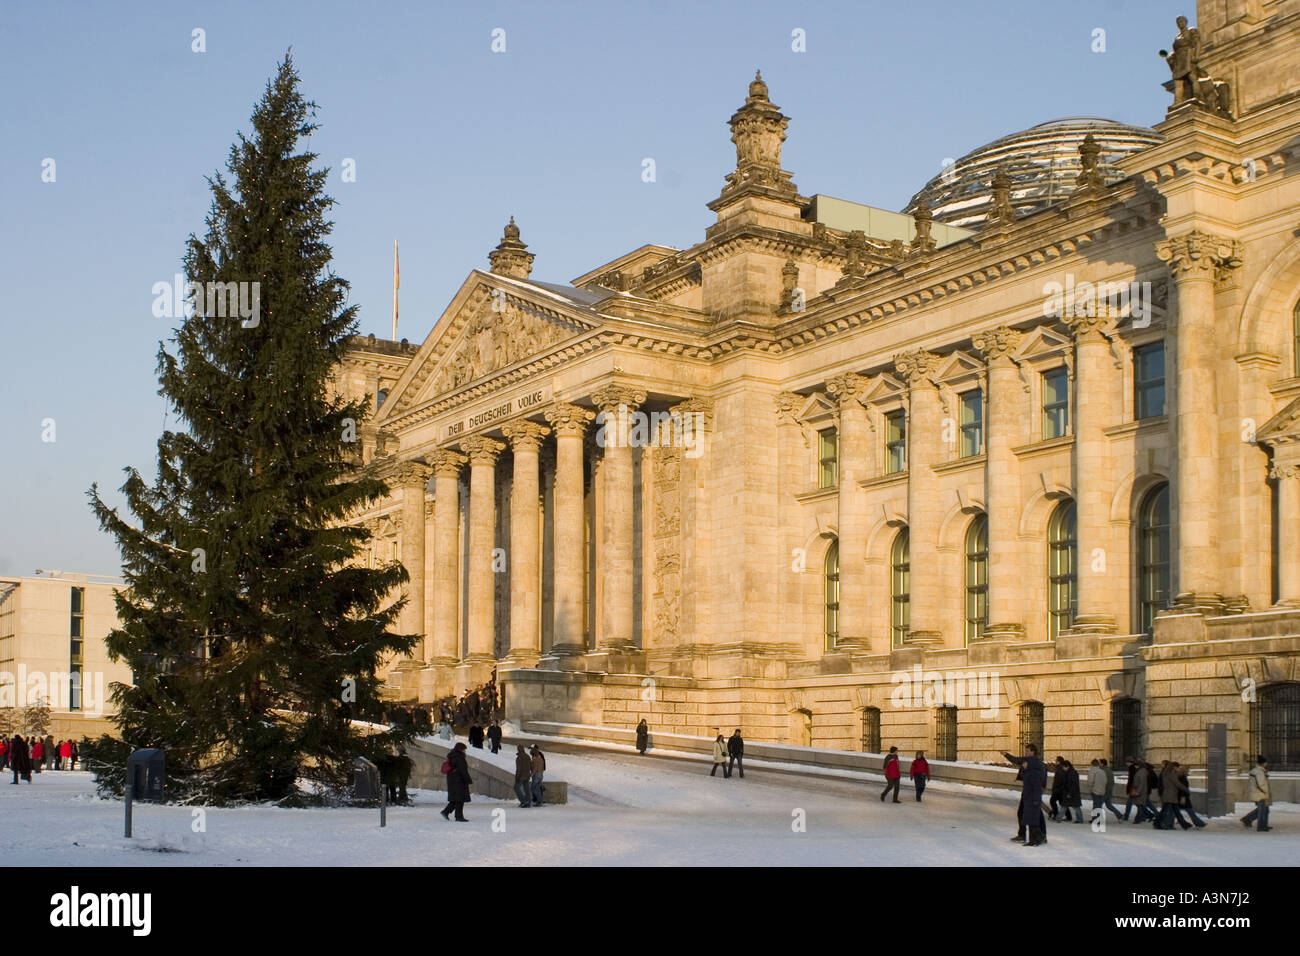 Entrée du Reichstag, Berlin avec personnes queuing en hiver Banque D'Images